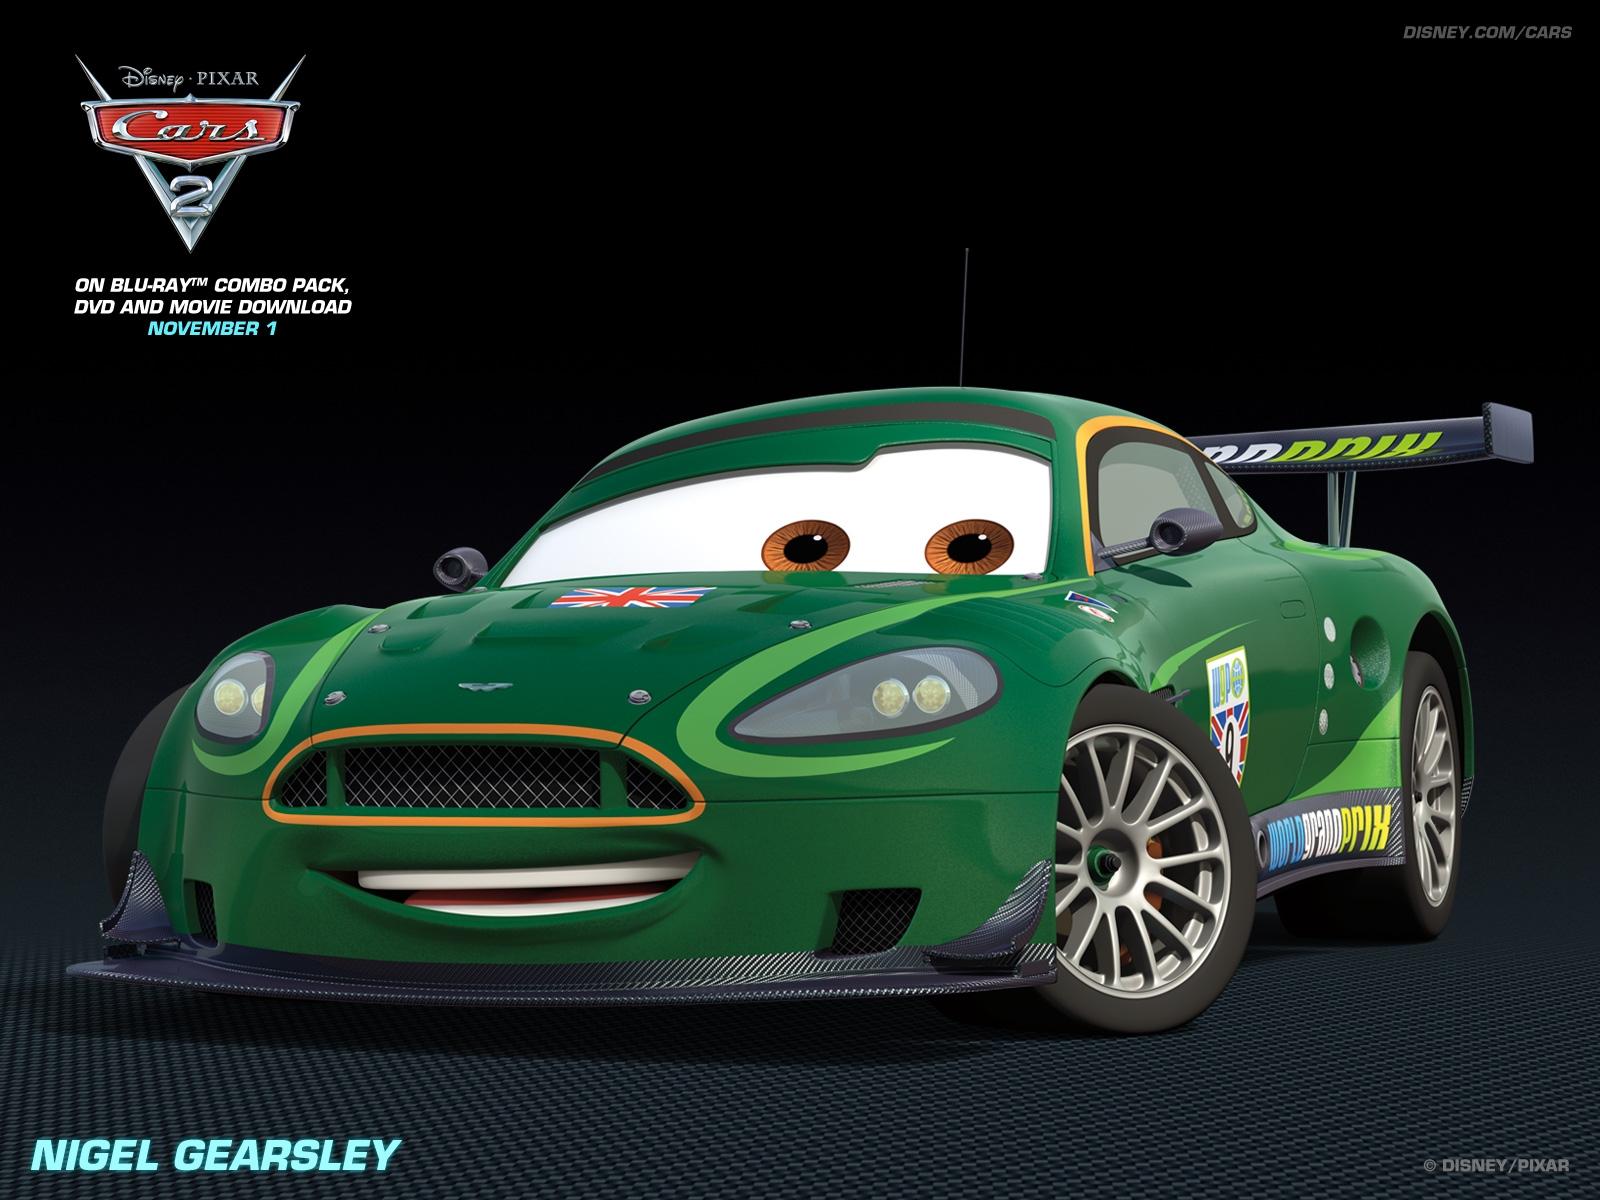 Disney Pixar Cars 2 Wallpapers - Top Free Disney Pixar Cars 2 ...